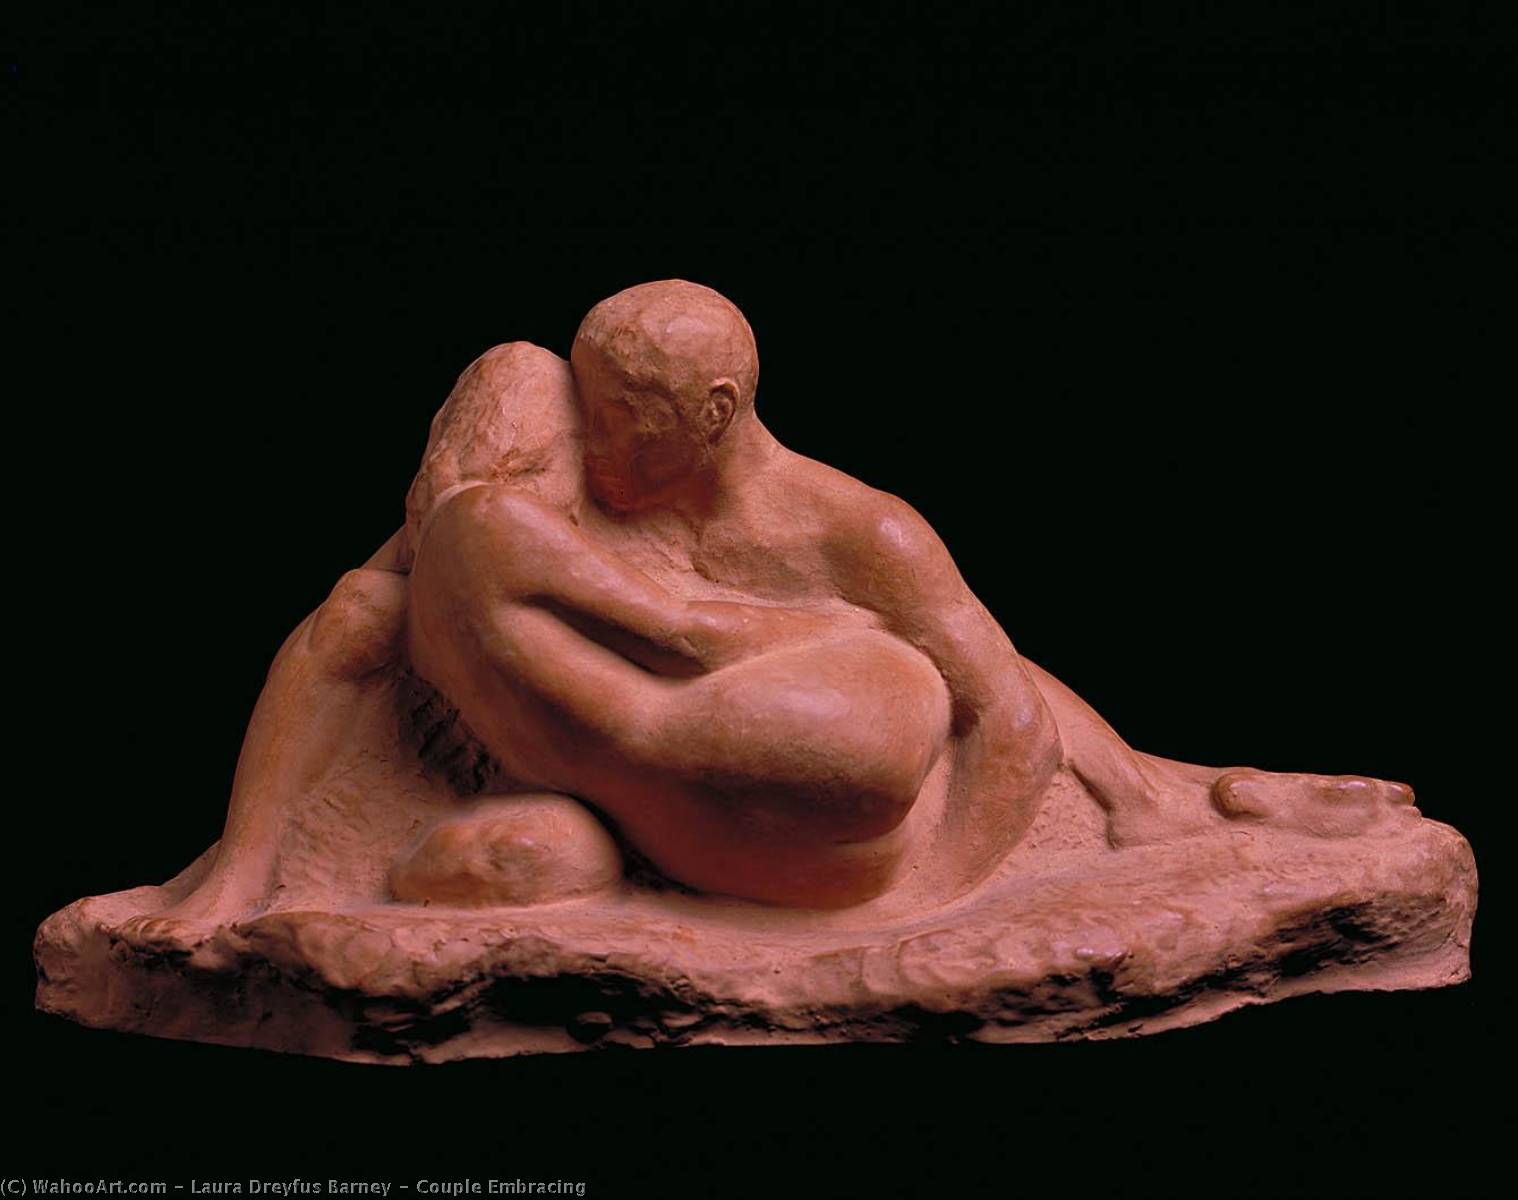 WikiOO.org - Εγκυκλοπαίδεια Καλών Τεχνών - Ζωγραφική, έργα τέχνης Laura Dreyfus Barney - Couple Embracing